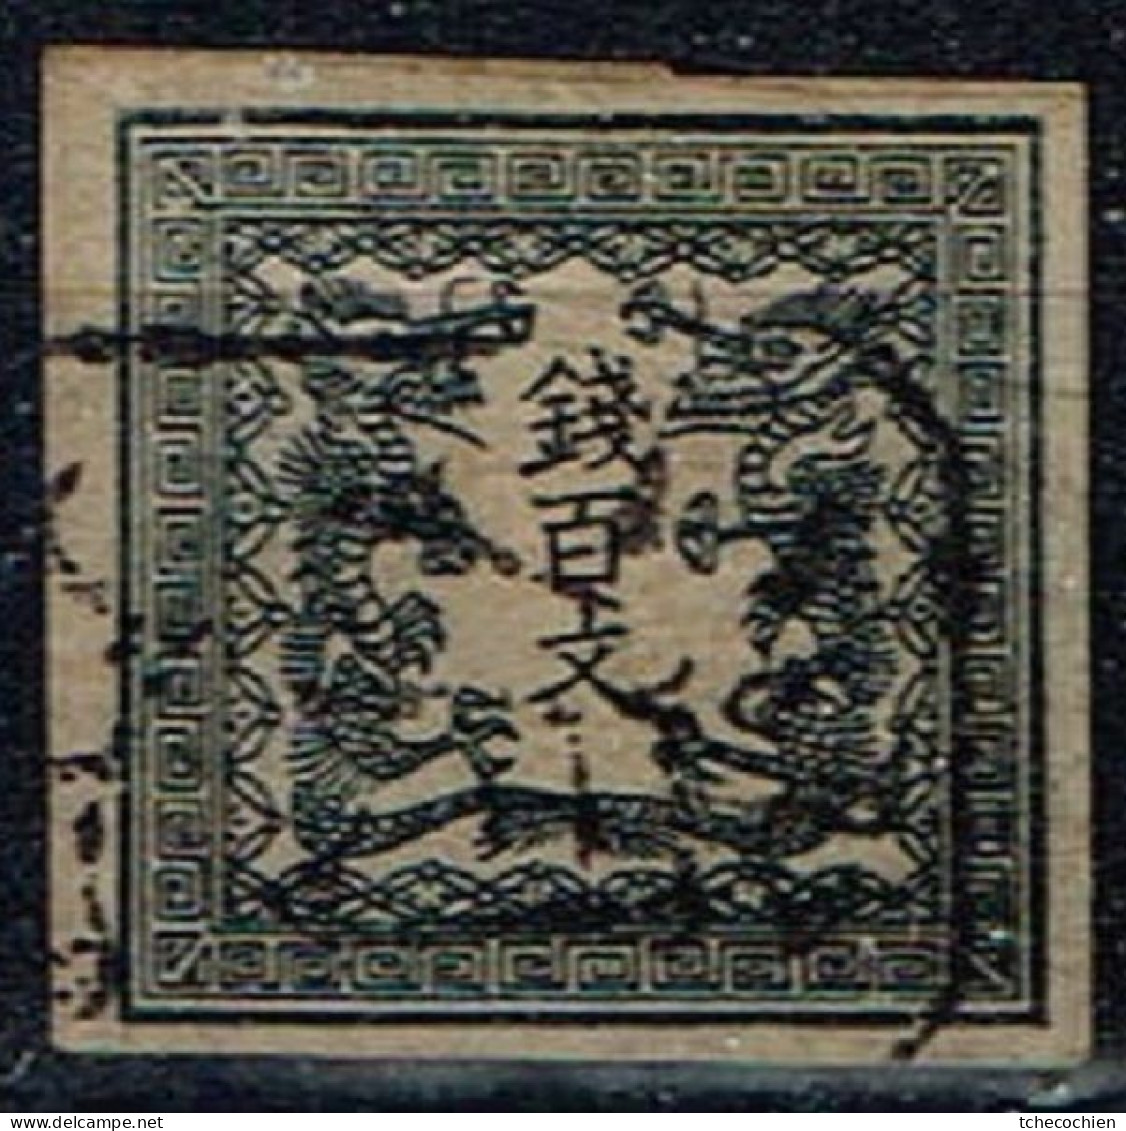 Japon - 1871 - Y&T N° 2 B, Oblitéré. Papier Mince Uni. - Usados